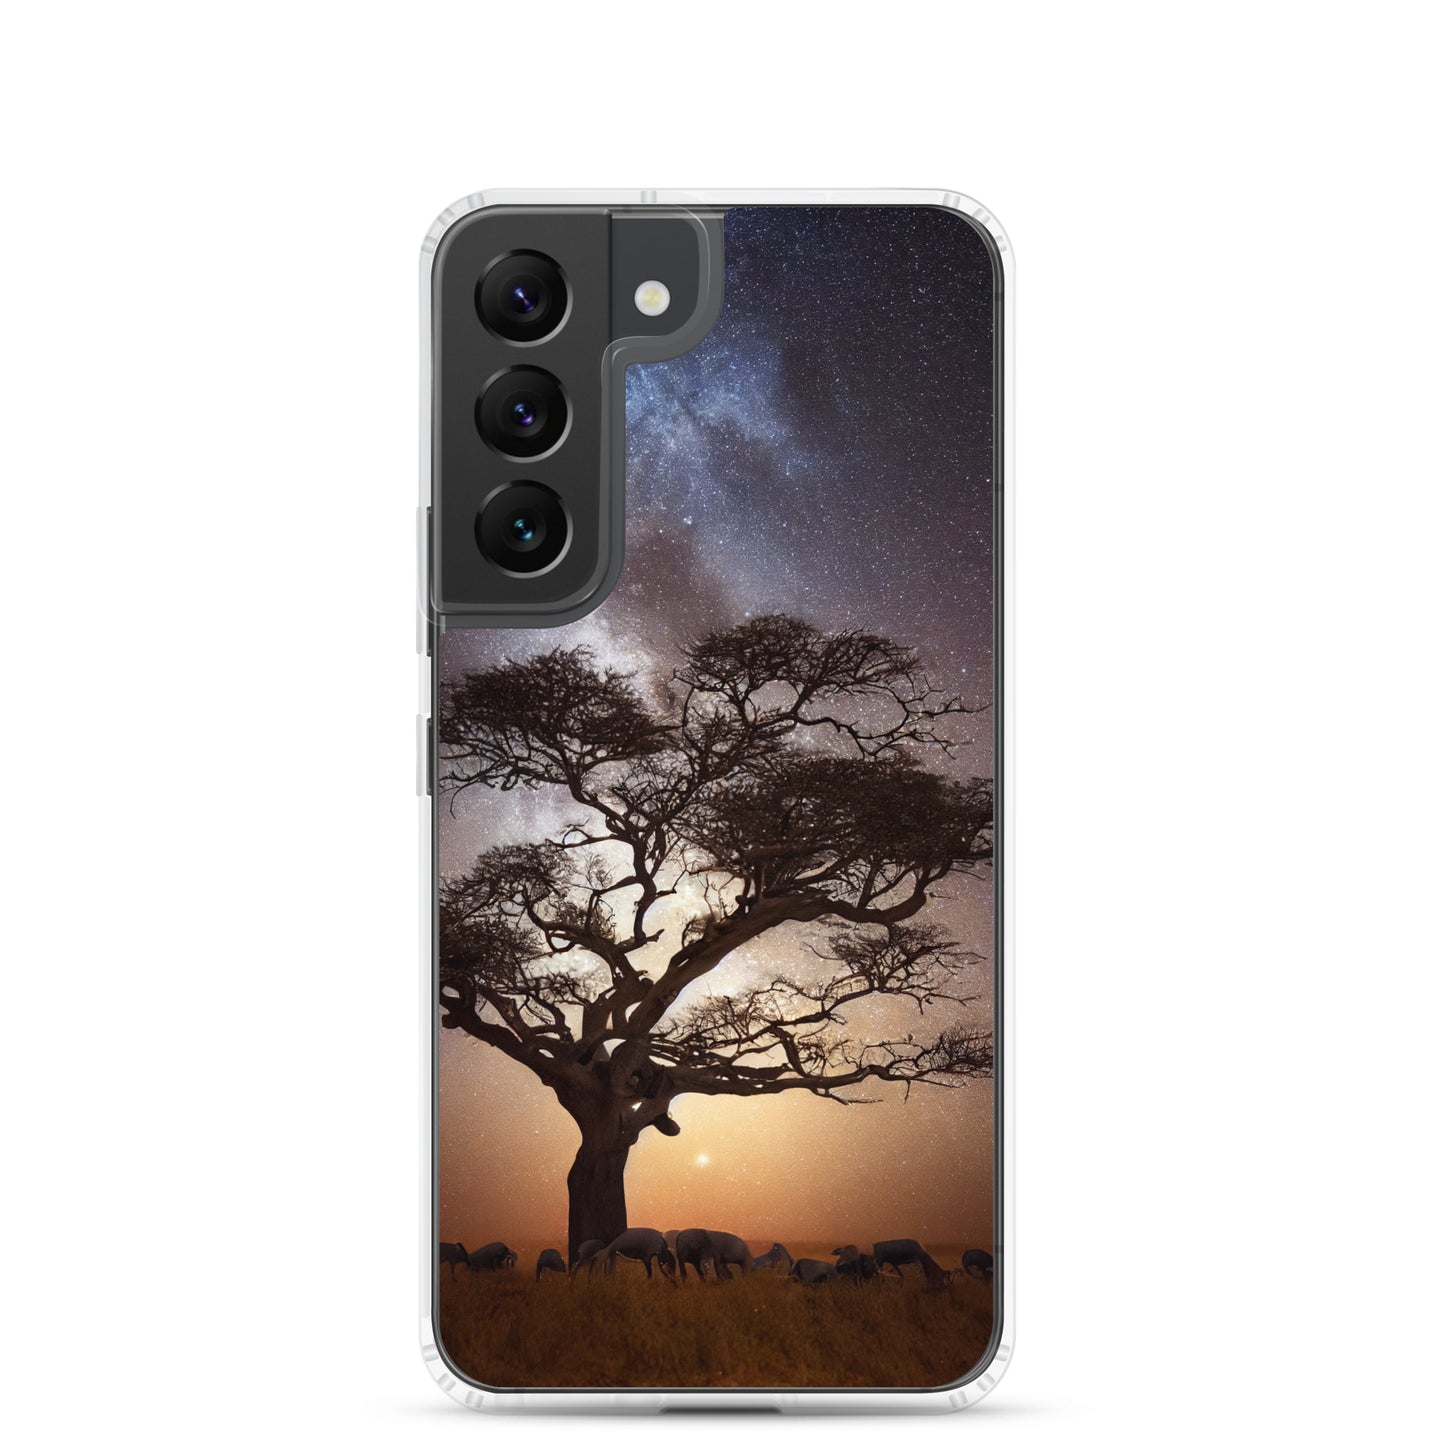 Samsung Case - African Vista - Acacia Tree Under the Milky Way